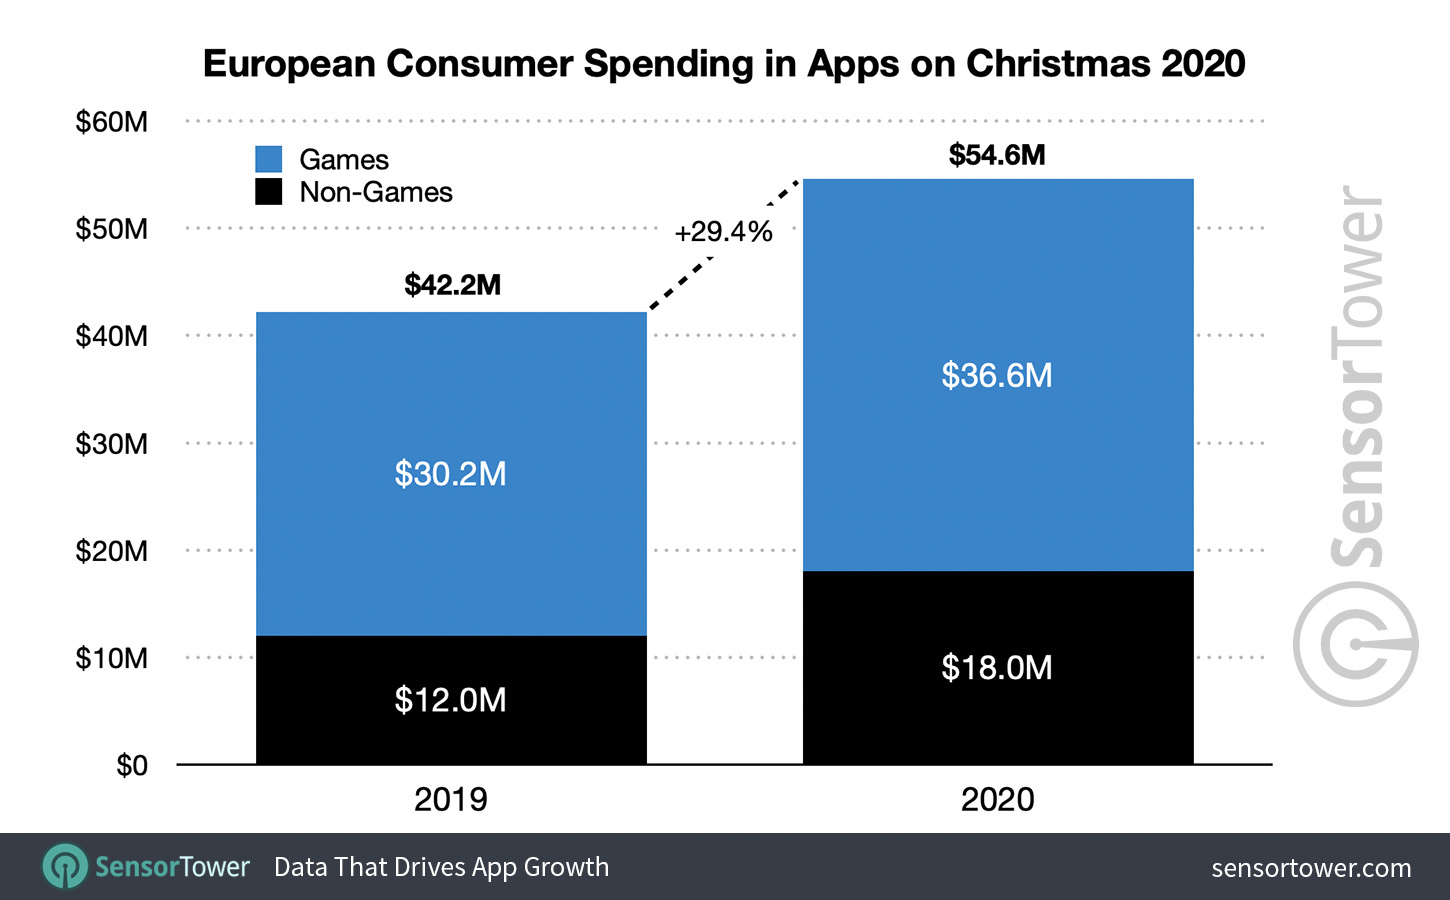 European Consumer Spending in Apps on Christmas 2020